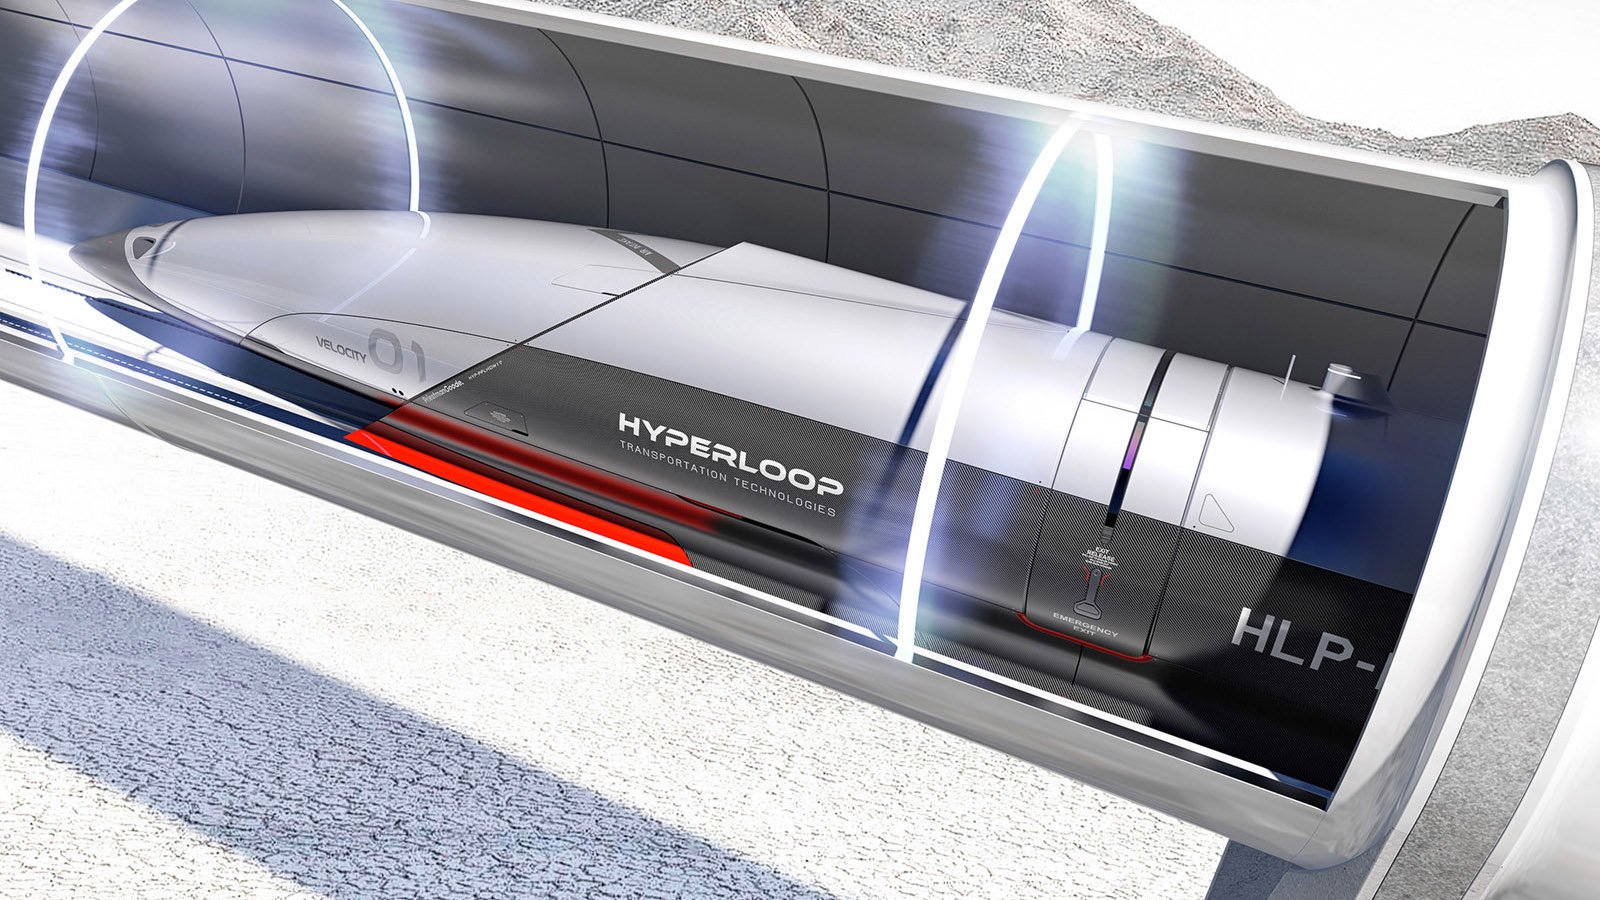 hyperloop-tube